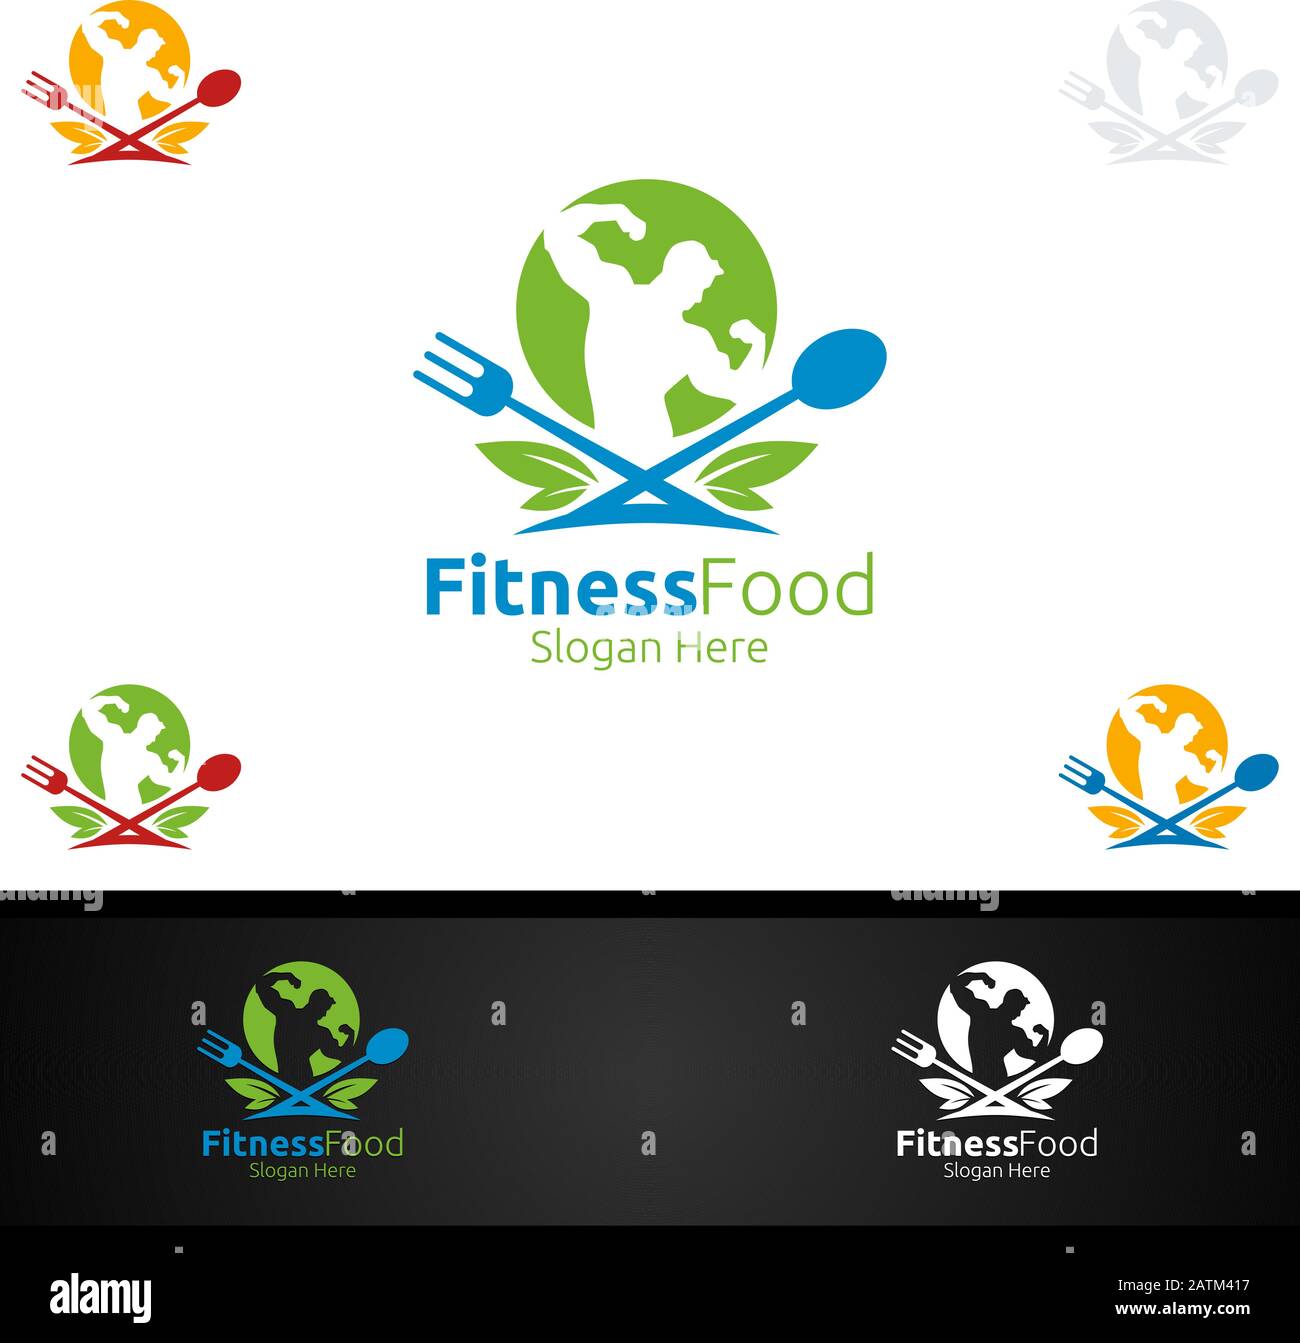 Logo De Remise En Forme Pour La Nutrition Ou Le Concept De Supplément Illustration de Vecteur